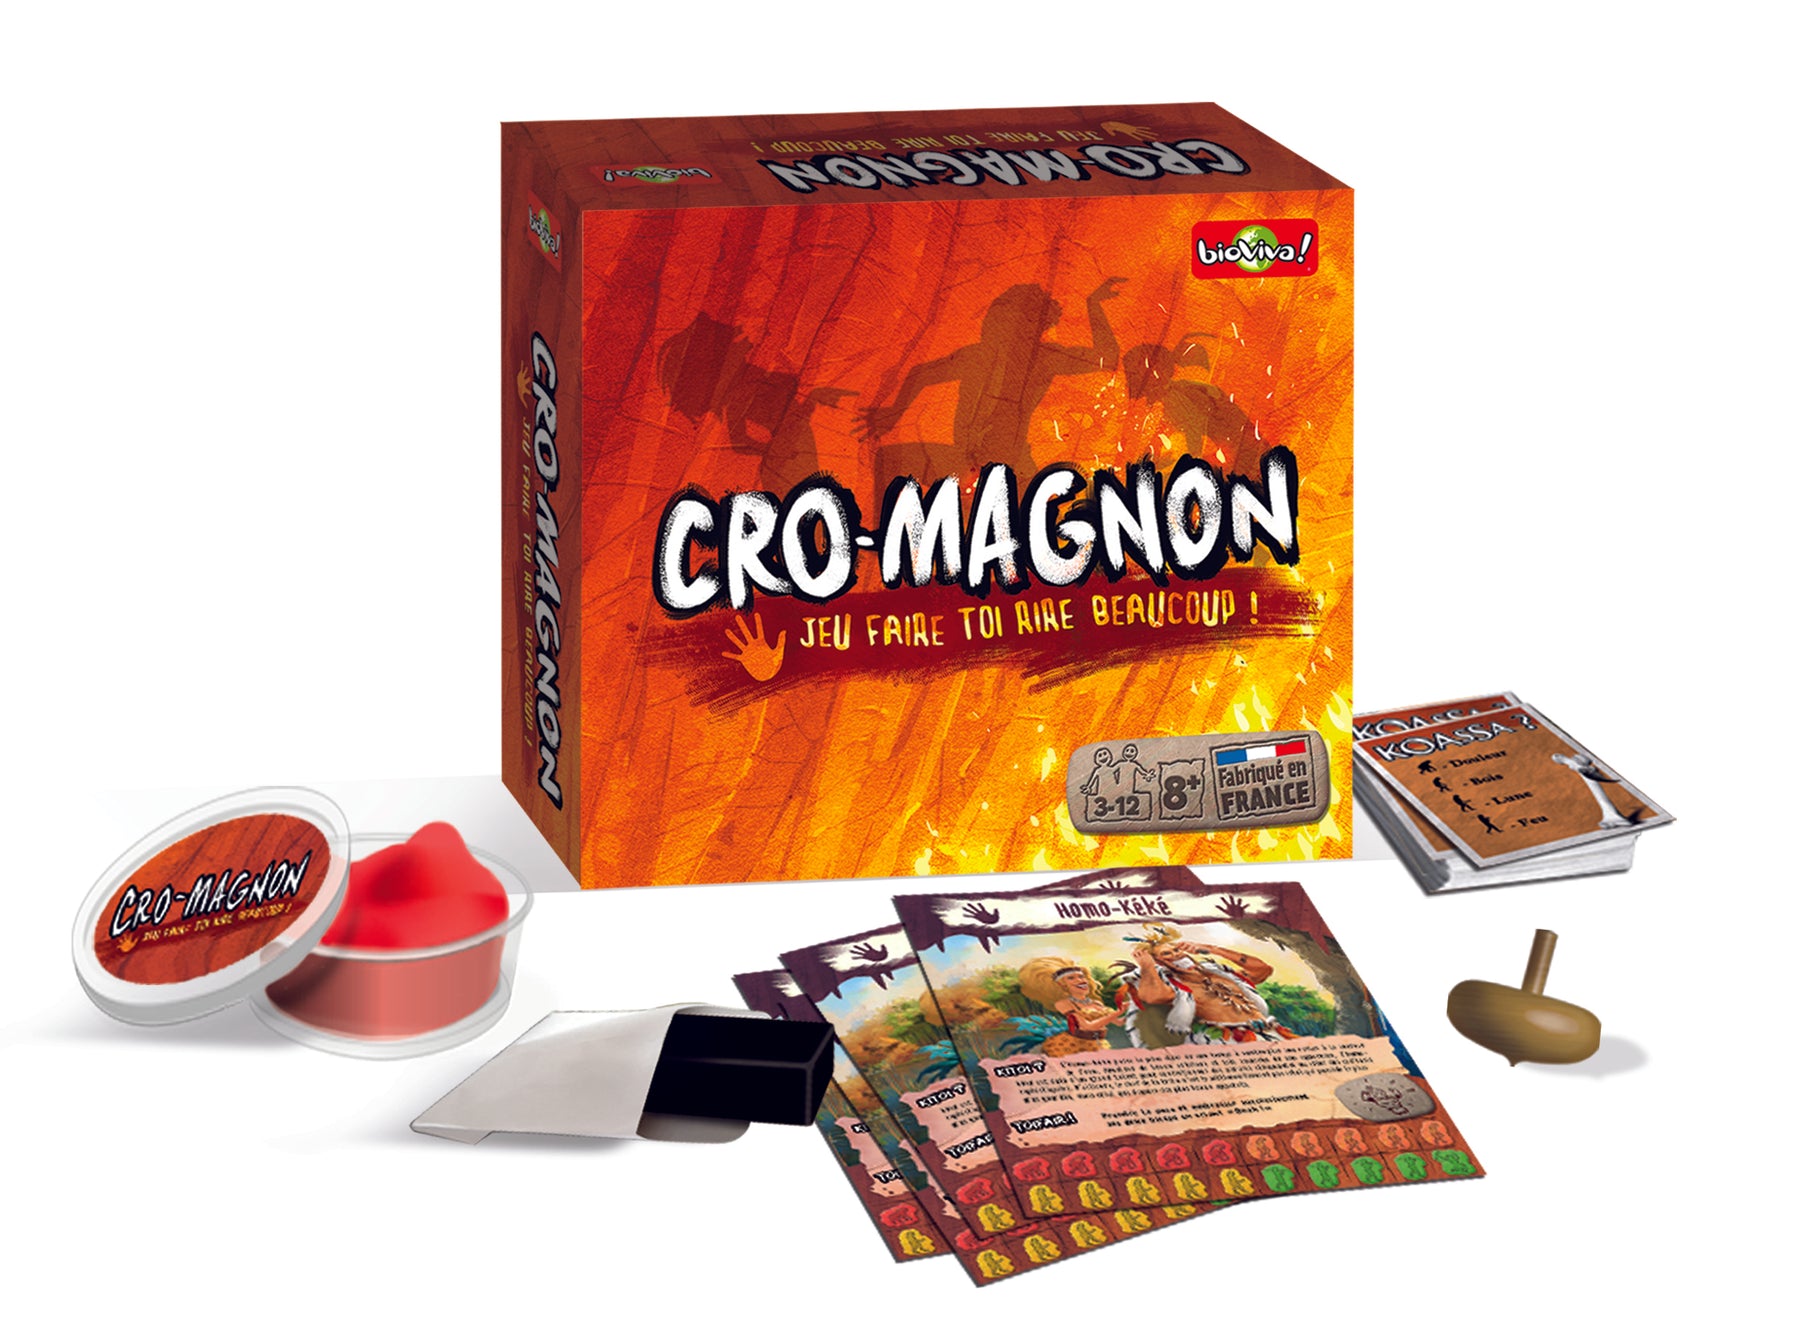 Cro-Magnon - 10 jaar editie